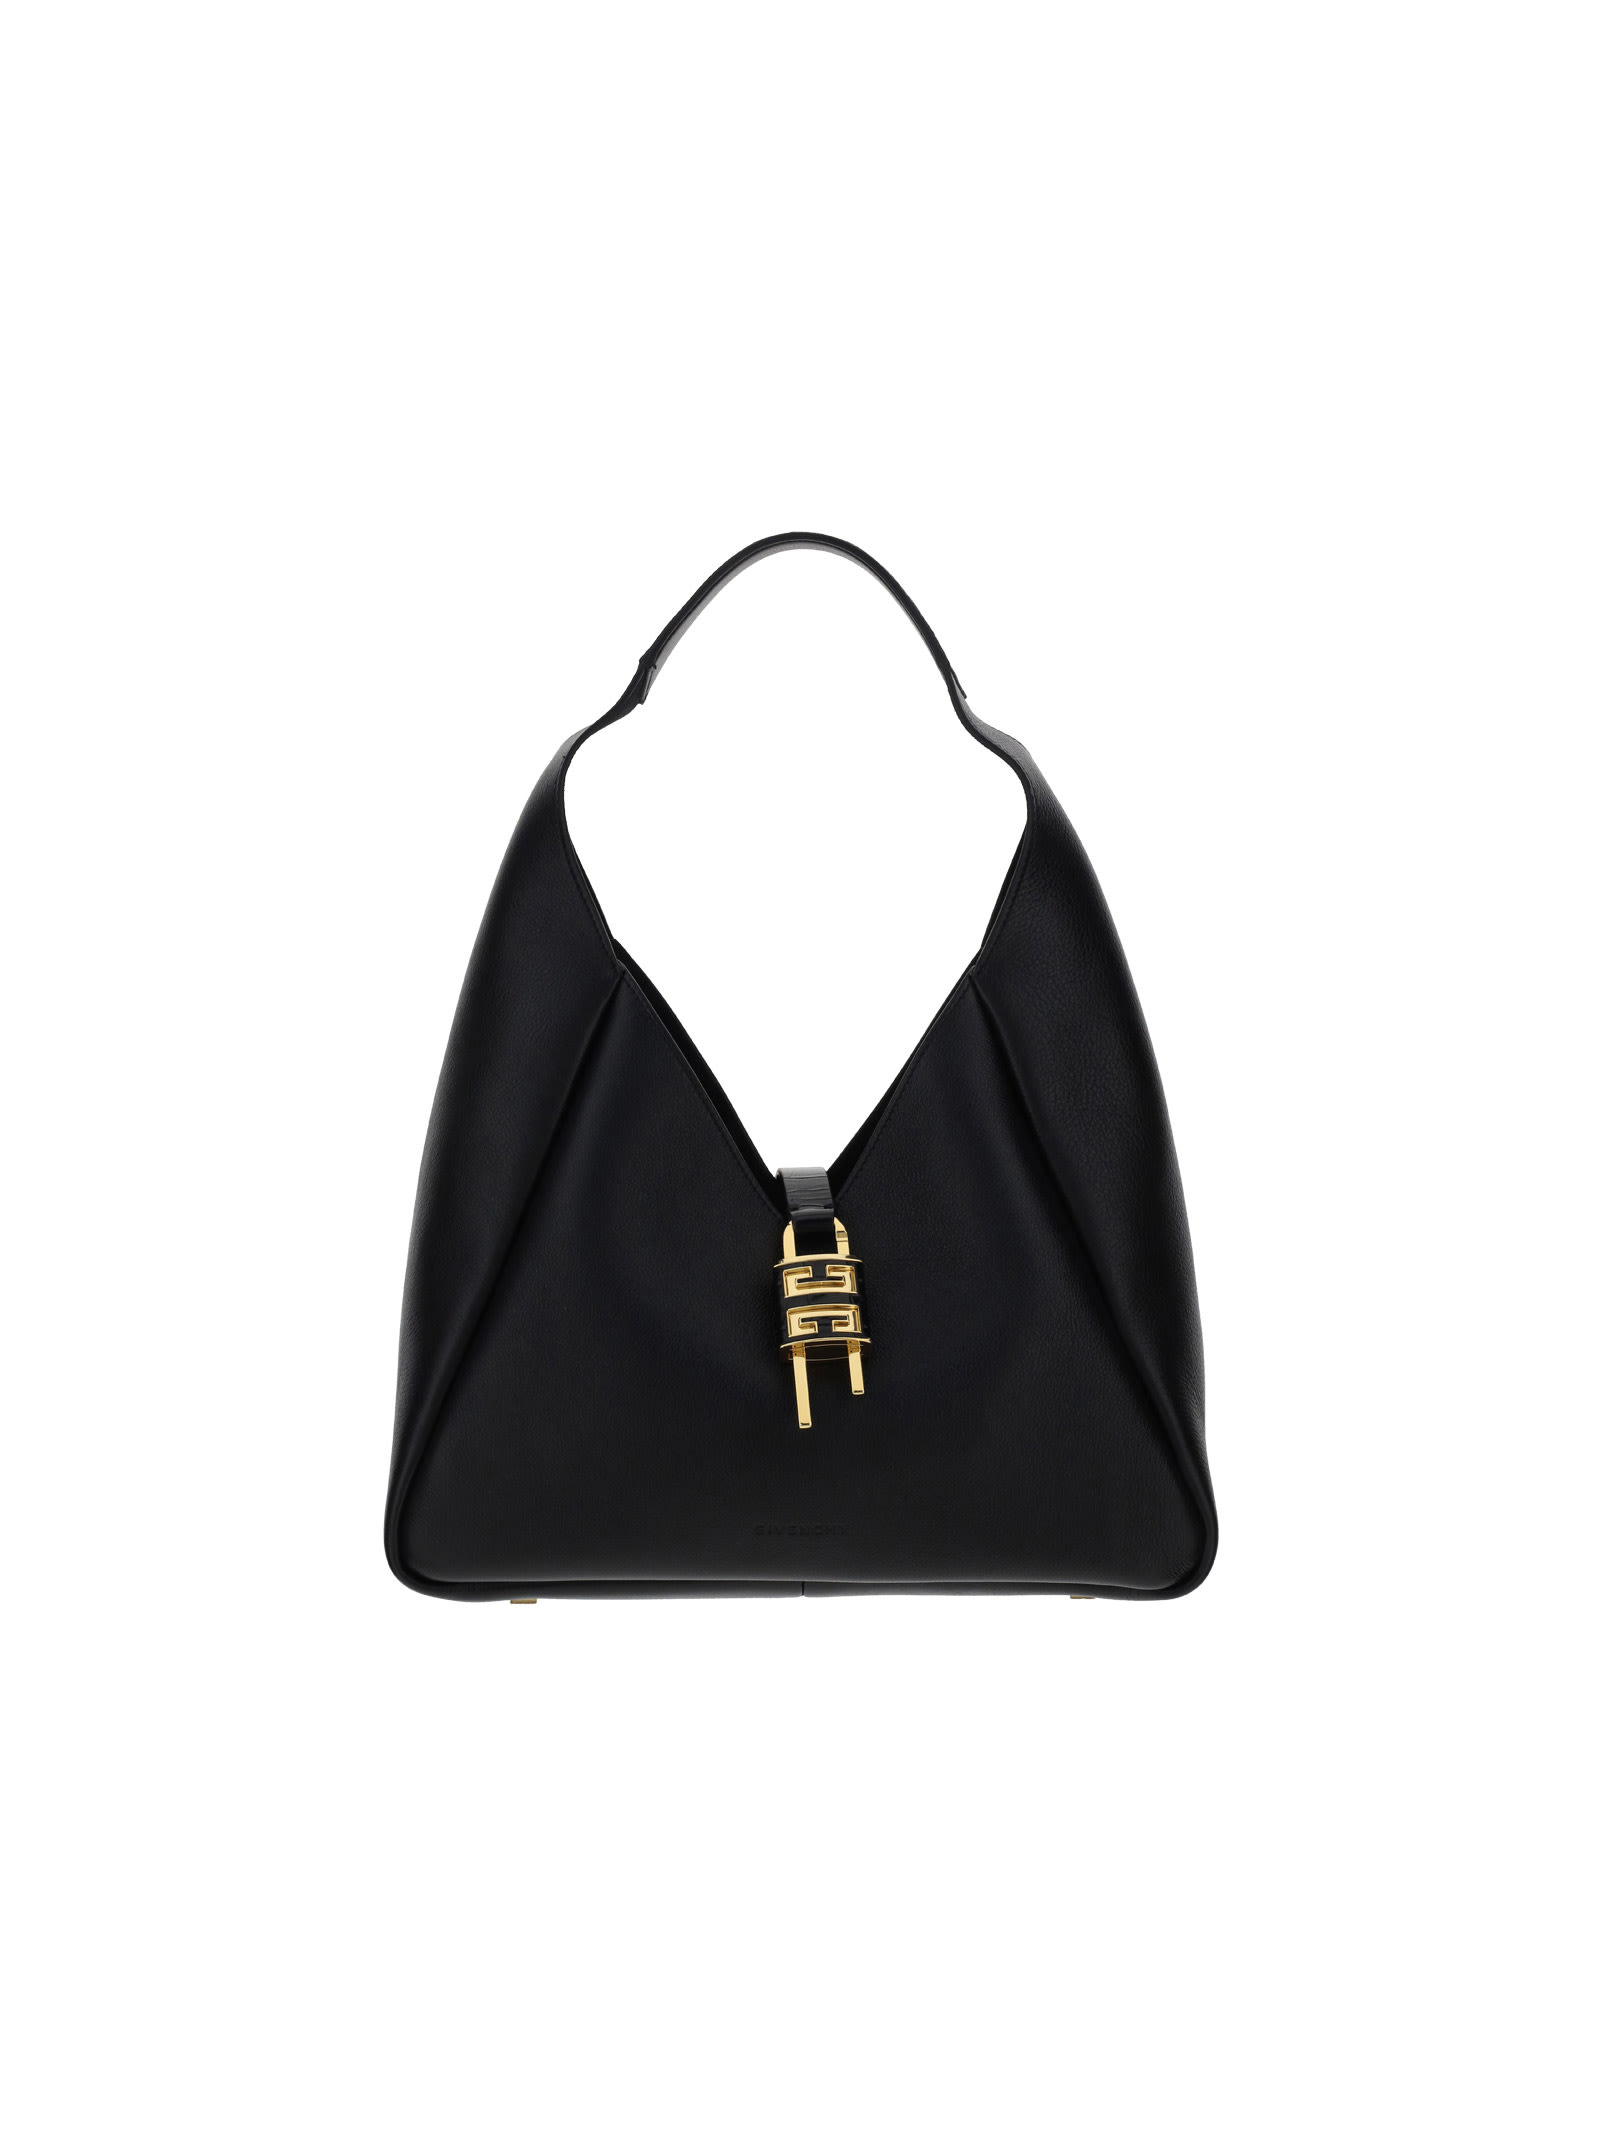 Givenchy Medium Hobo Shoulder Bag